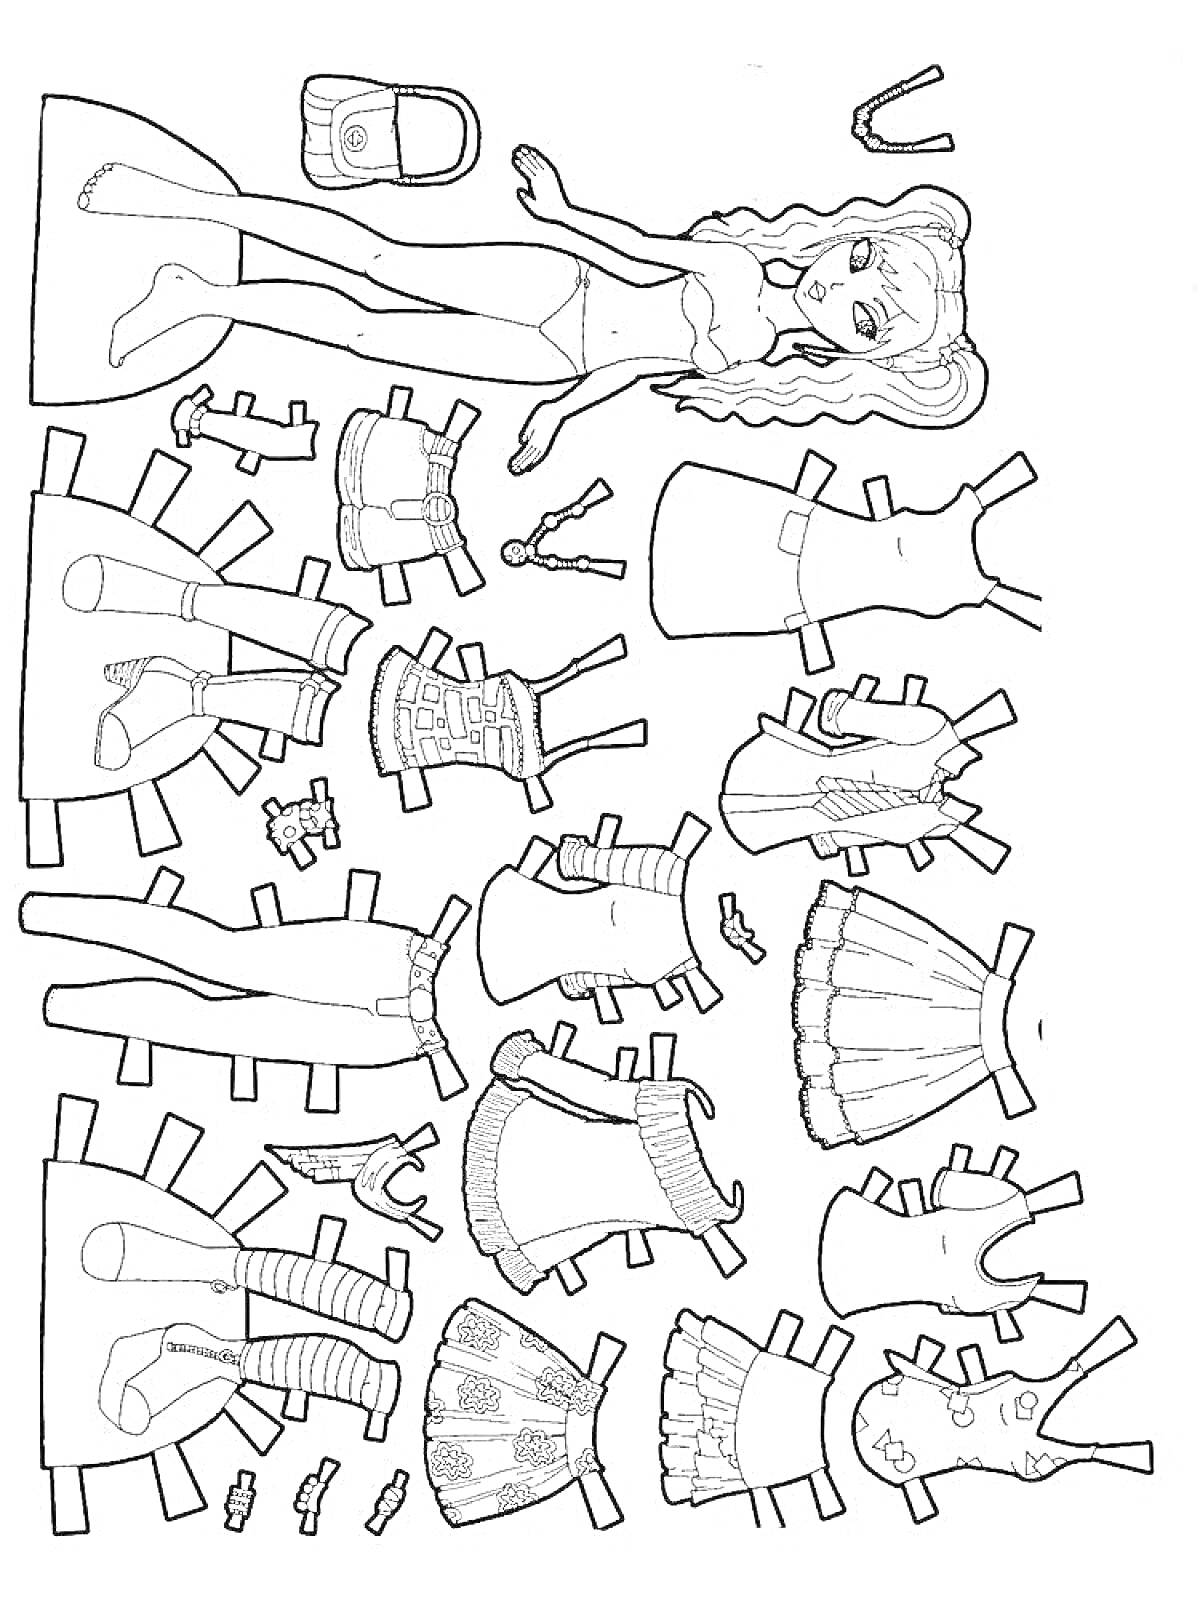 Раскраска Бумажная кукла со сменной одеждой и аксессуарами (включает куклу, сумочку, обувь, пять нарядов, аксессуары для волос)